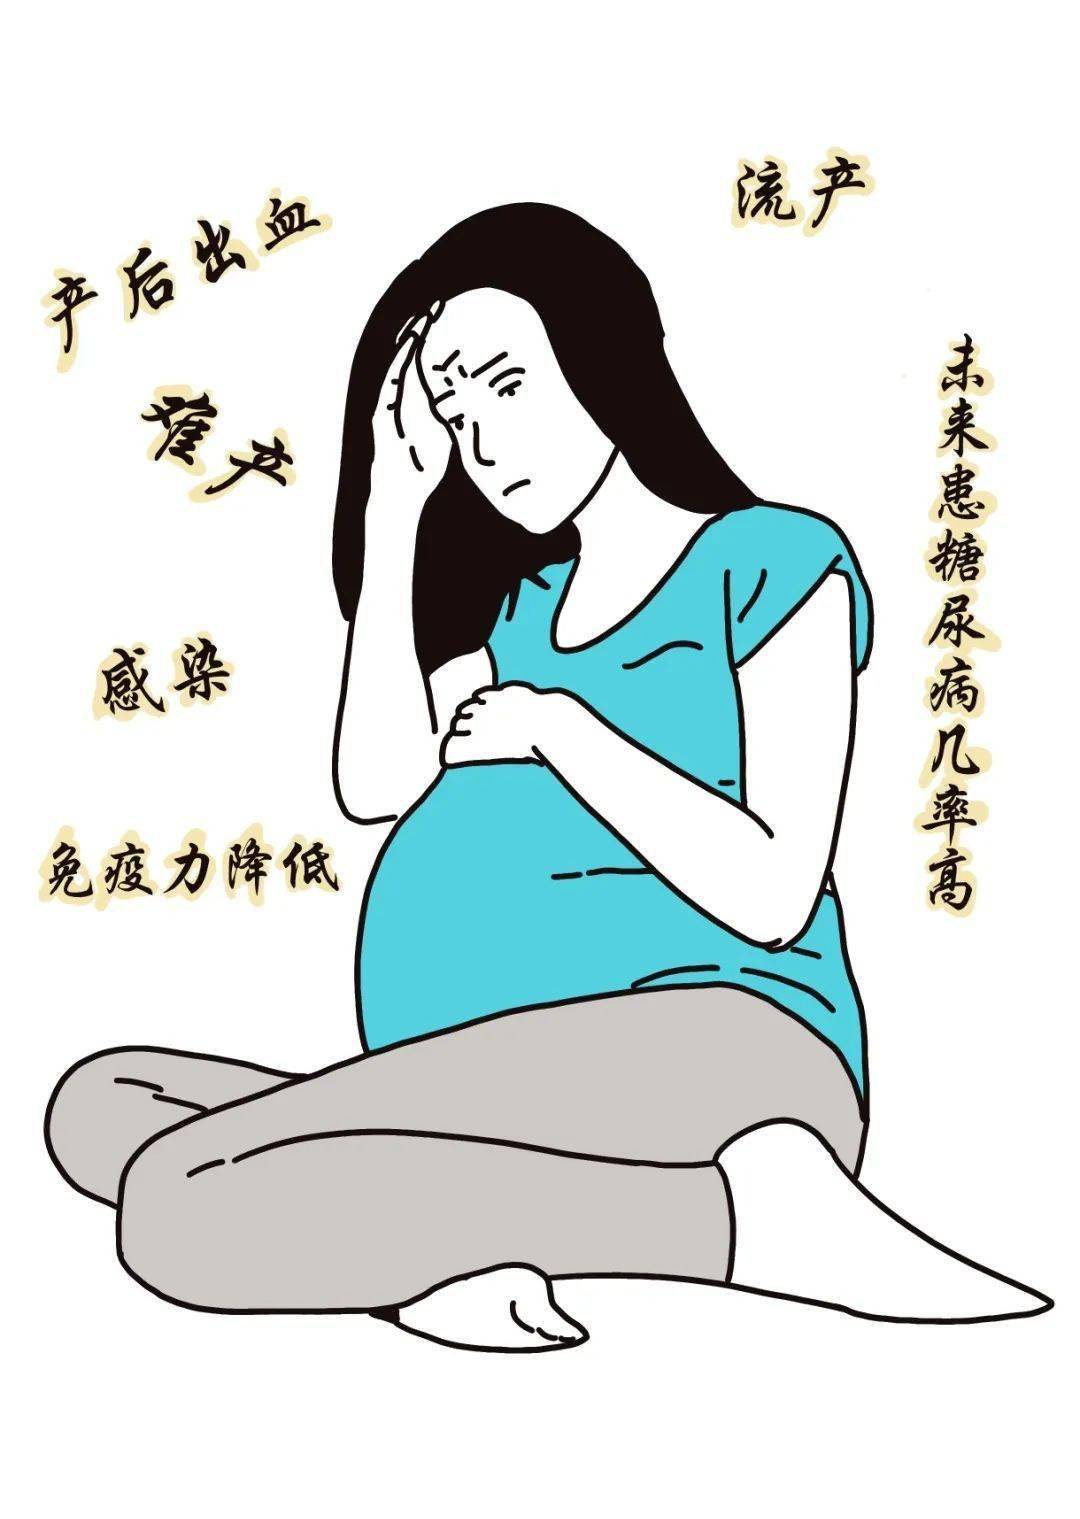 的糖妈妈是gdm怀孕期间才出现或确诊糖尿病称为妊娠期糖尿病(gdm)